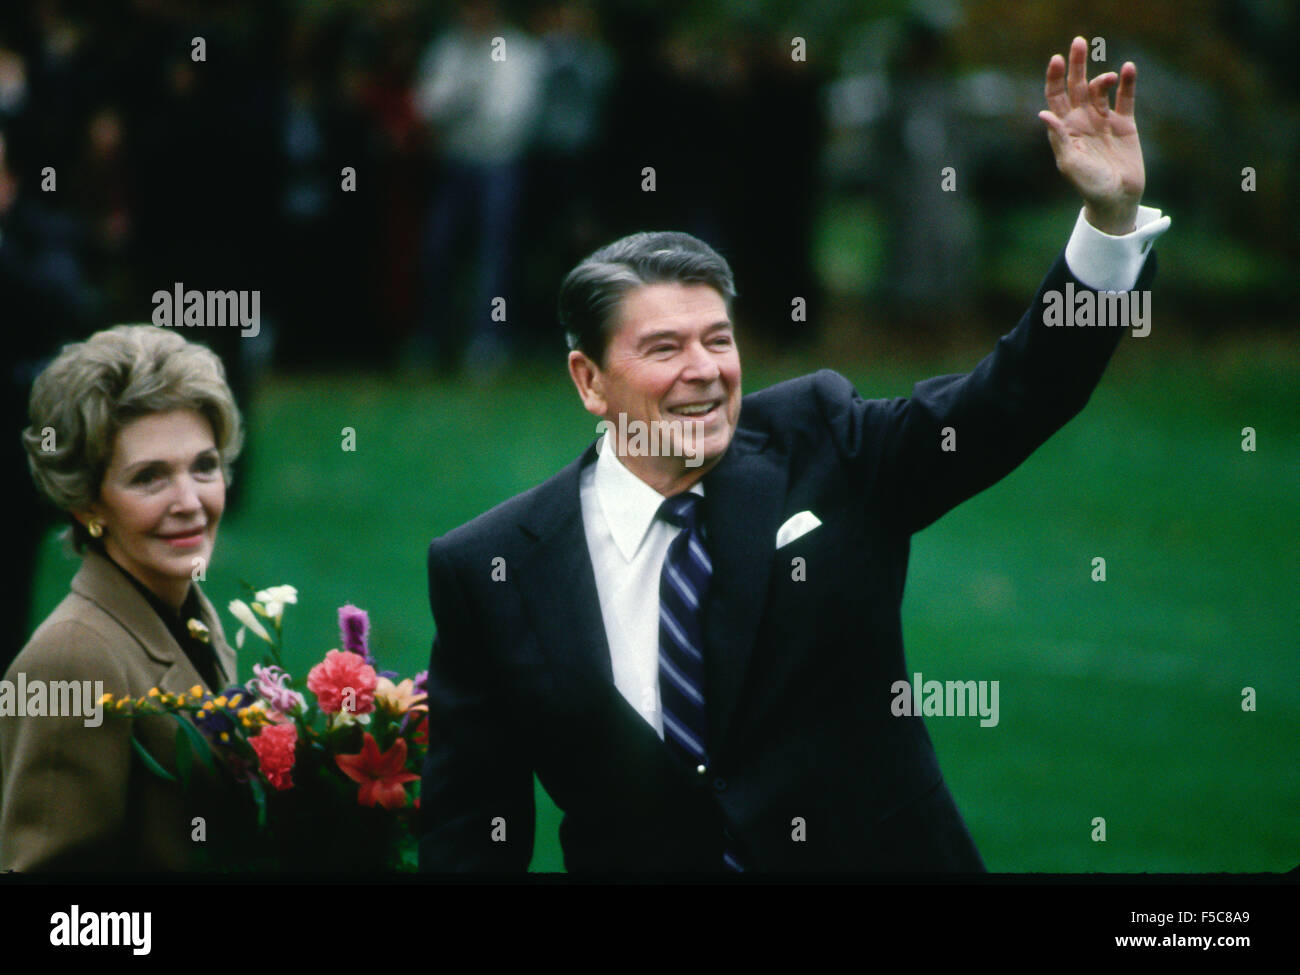 Washington, DC.  November 1985 Präsident Ronald Reagan und FIrst Lady Nancy Reagan Welle um eine Menge von Touristen warten auf dem South Lawn bei ihrer Ankunft zurück im Weißen Haus. Dieses Bild wurde in "Newsweek" Zeitschrift 25.11.1985 veröffentlicht. Bildnachweis: Mark Reinstein Stockfoto